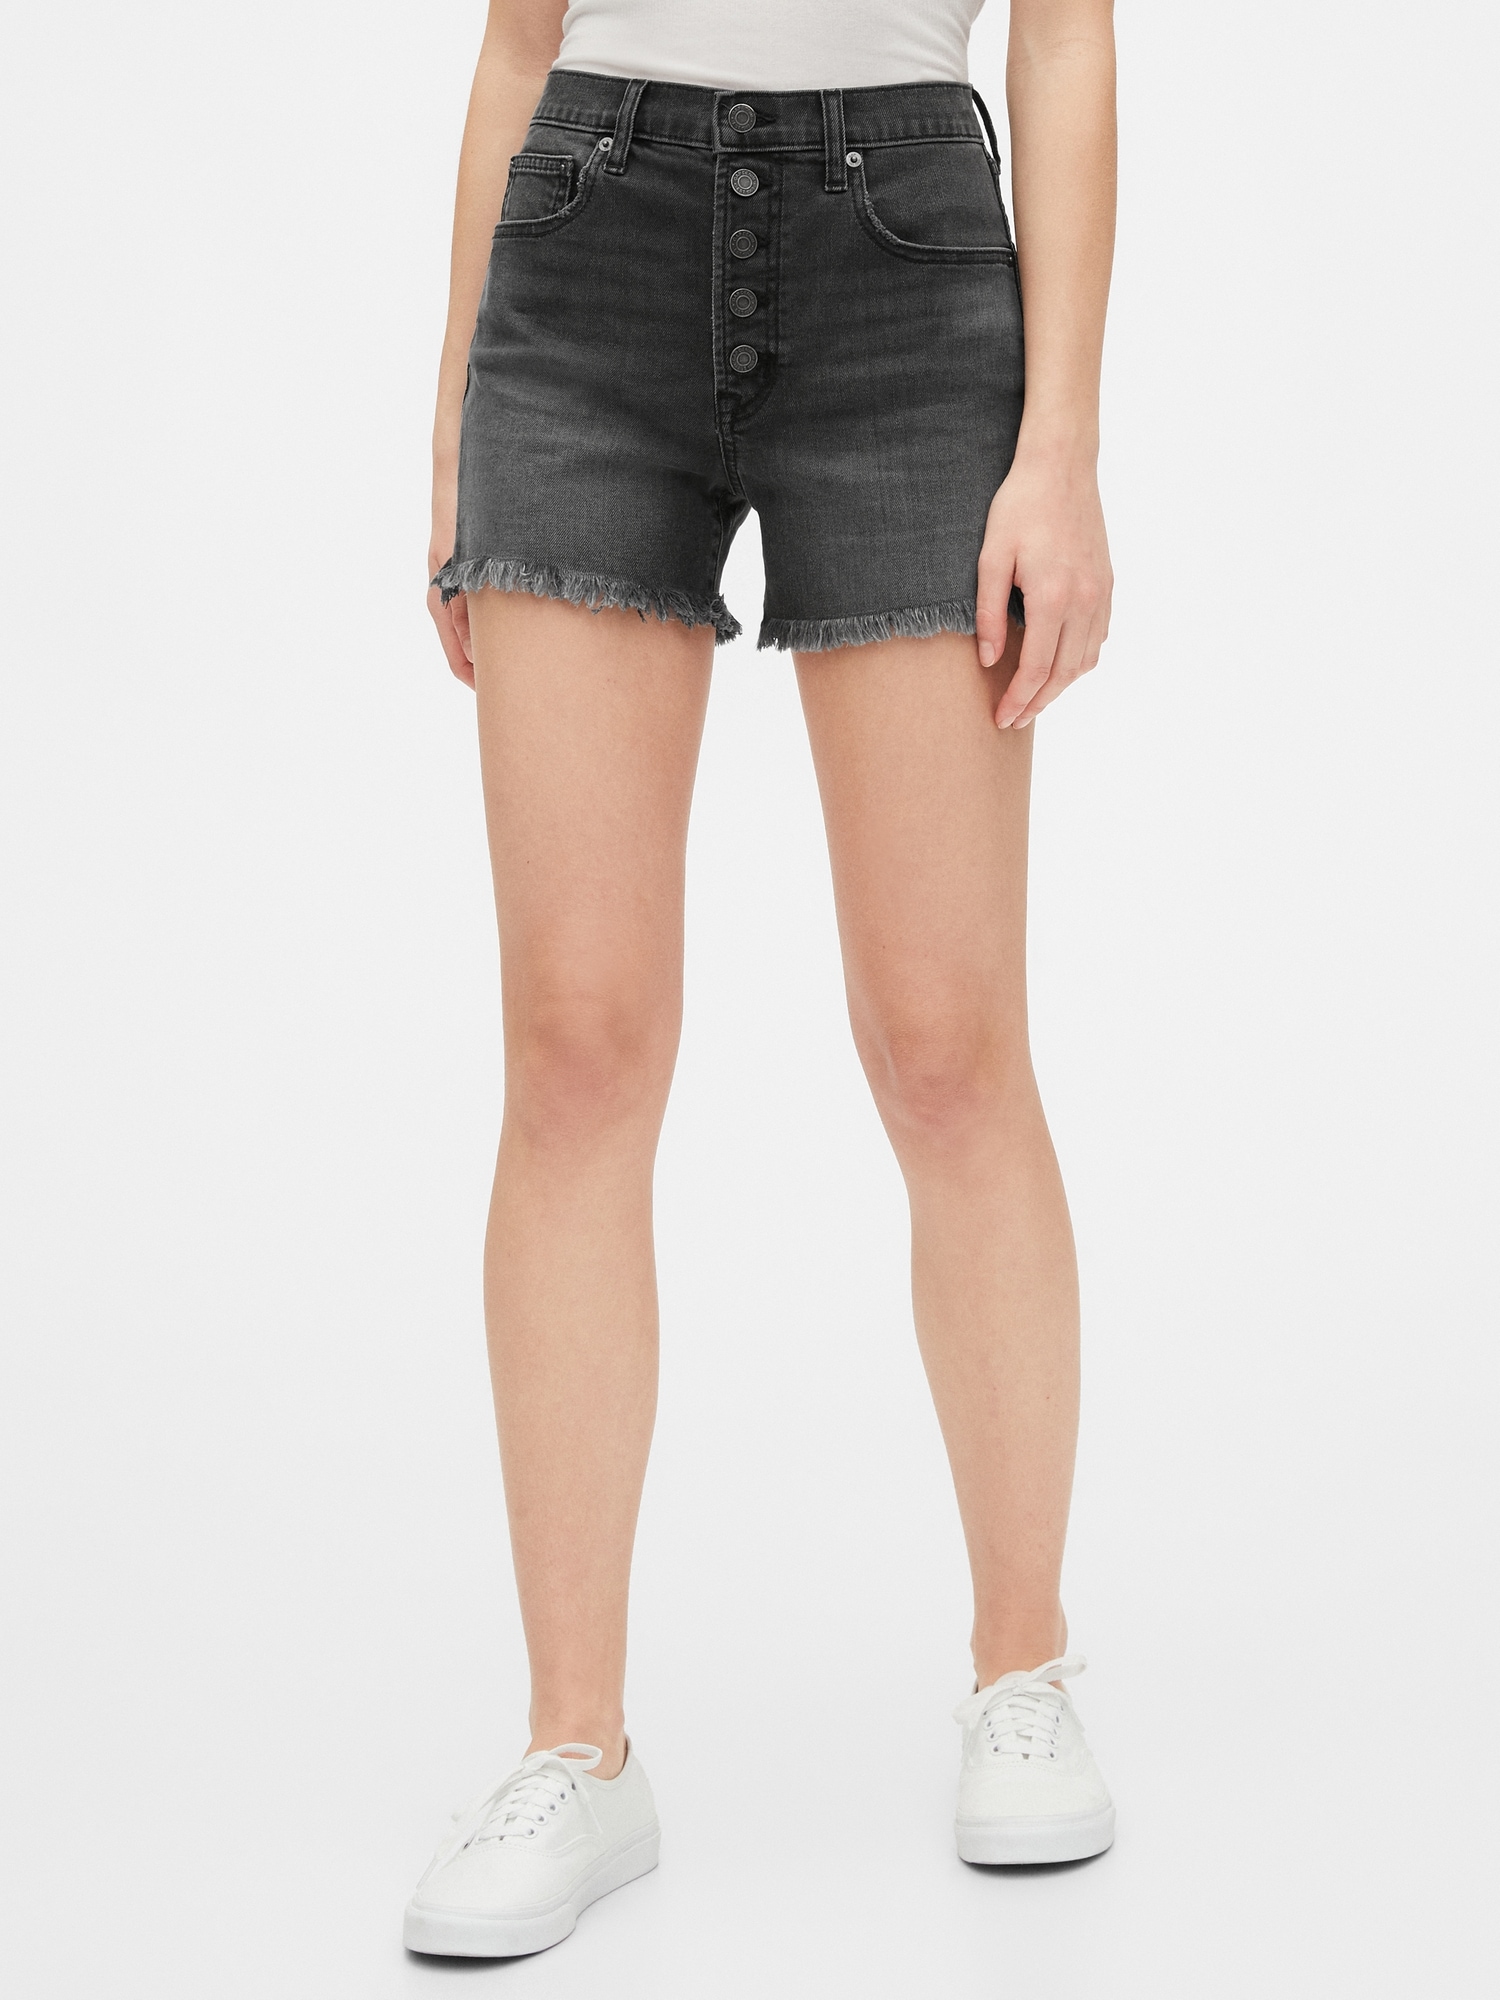 gap jean shorts